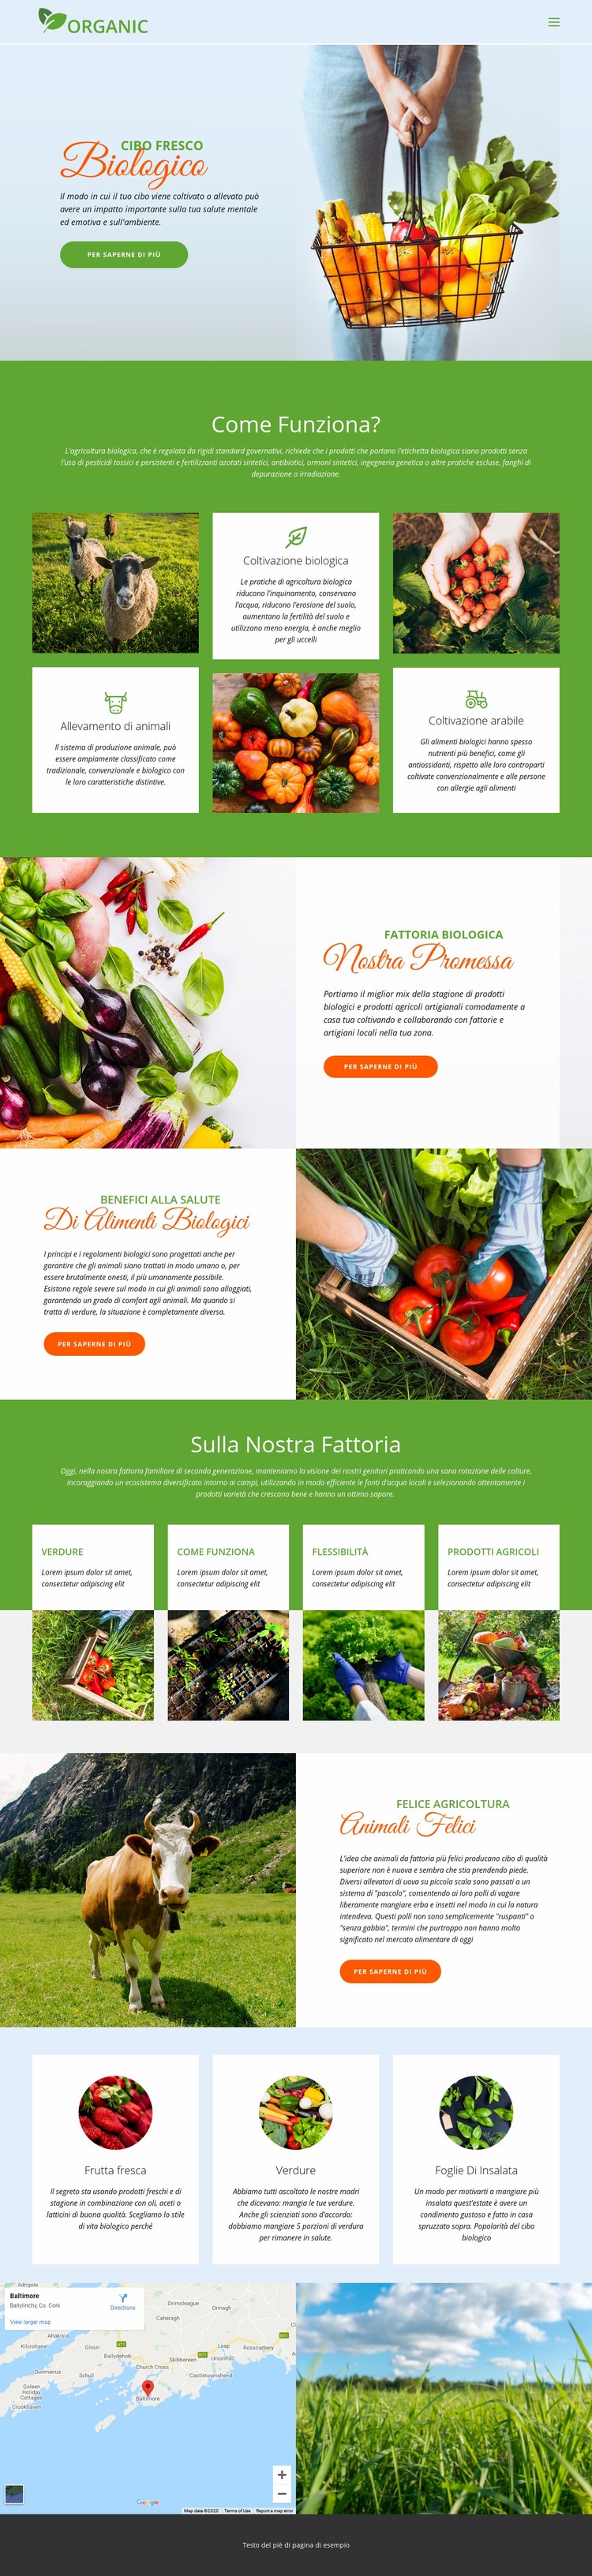 Mangia il miglior cibo biologico Costruttore di siti web HTML